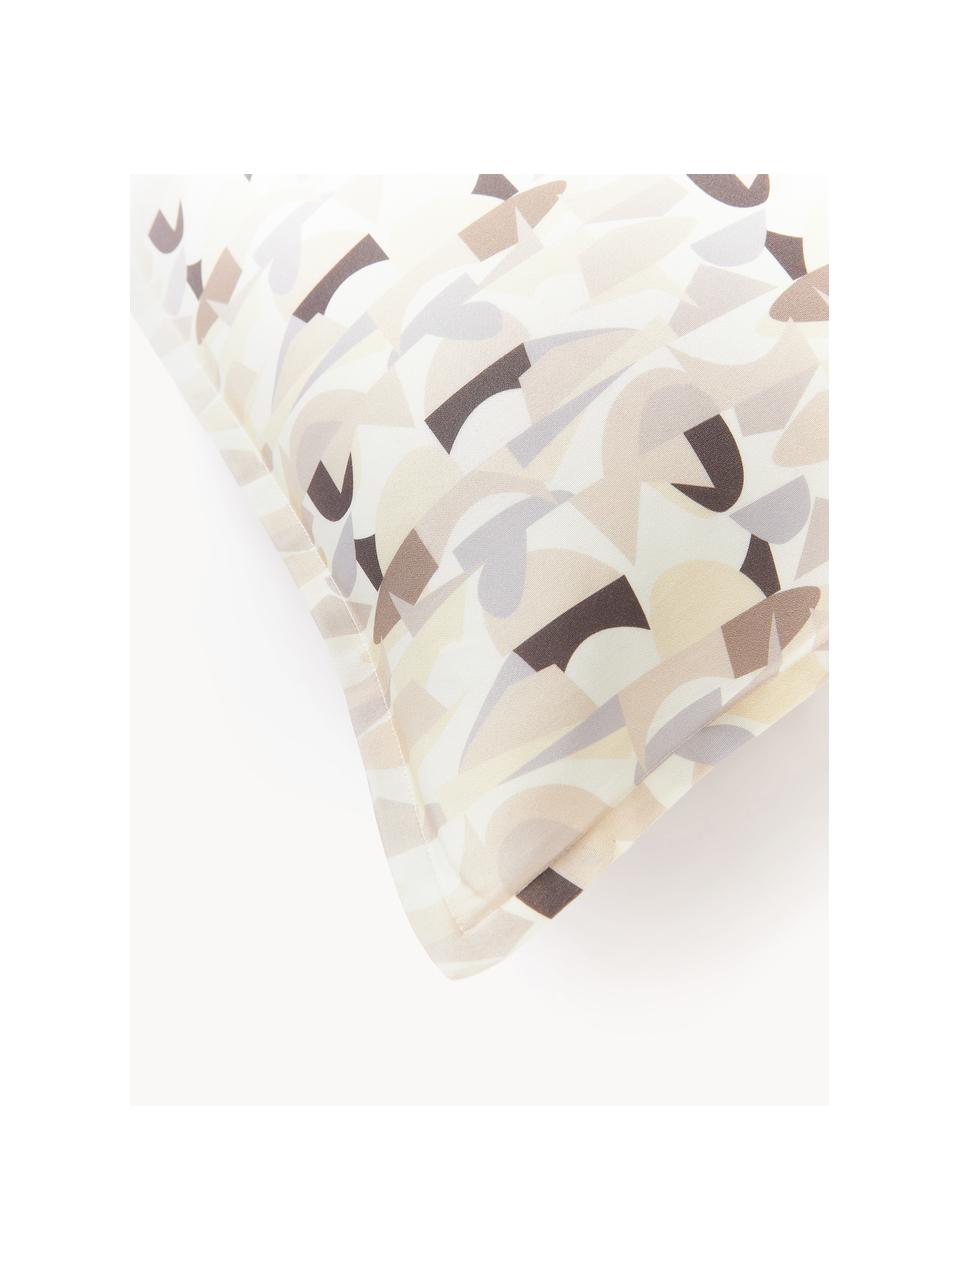 Funda de almohada de satén estampado Cadence, Tonos beige, 45 x 110 cm